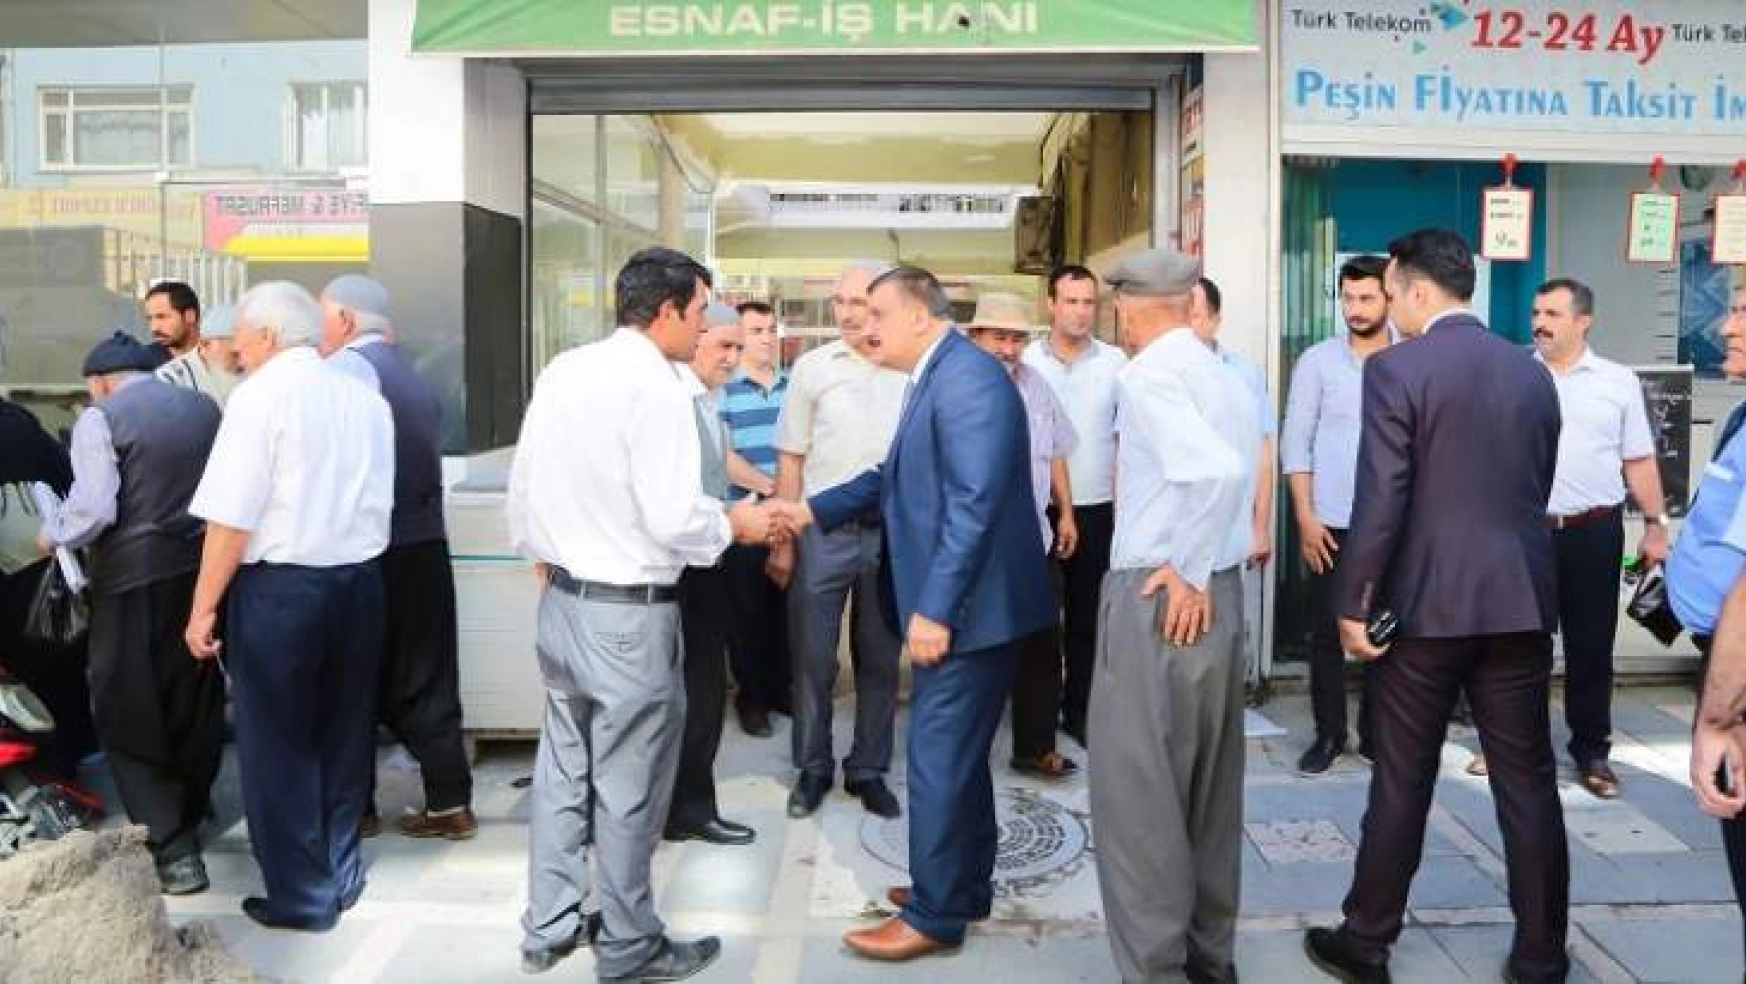 Başkan Gürkan, Minibüs Durukları İle Esnaf İş Hanı'ndaki Çalışmaları Yerinde İnceledi